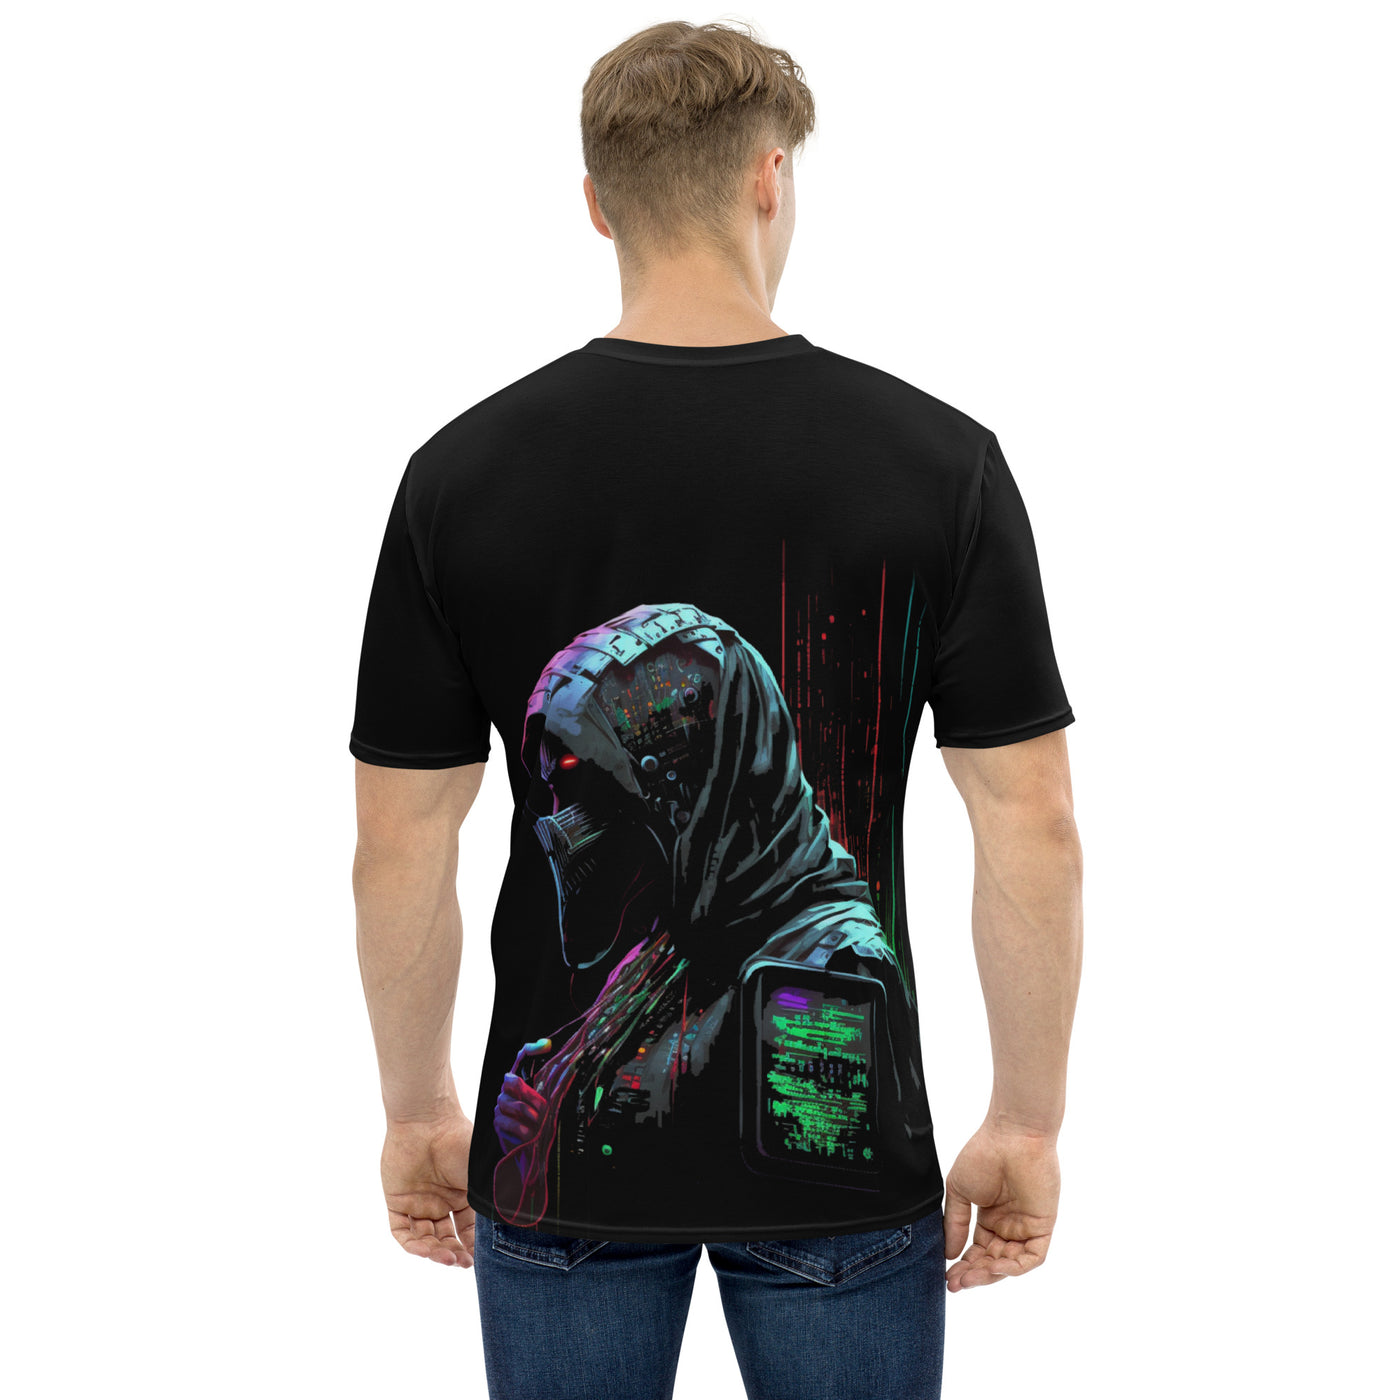 Cyberware assassin v59 - Men's t-shirt